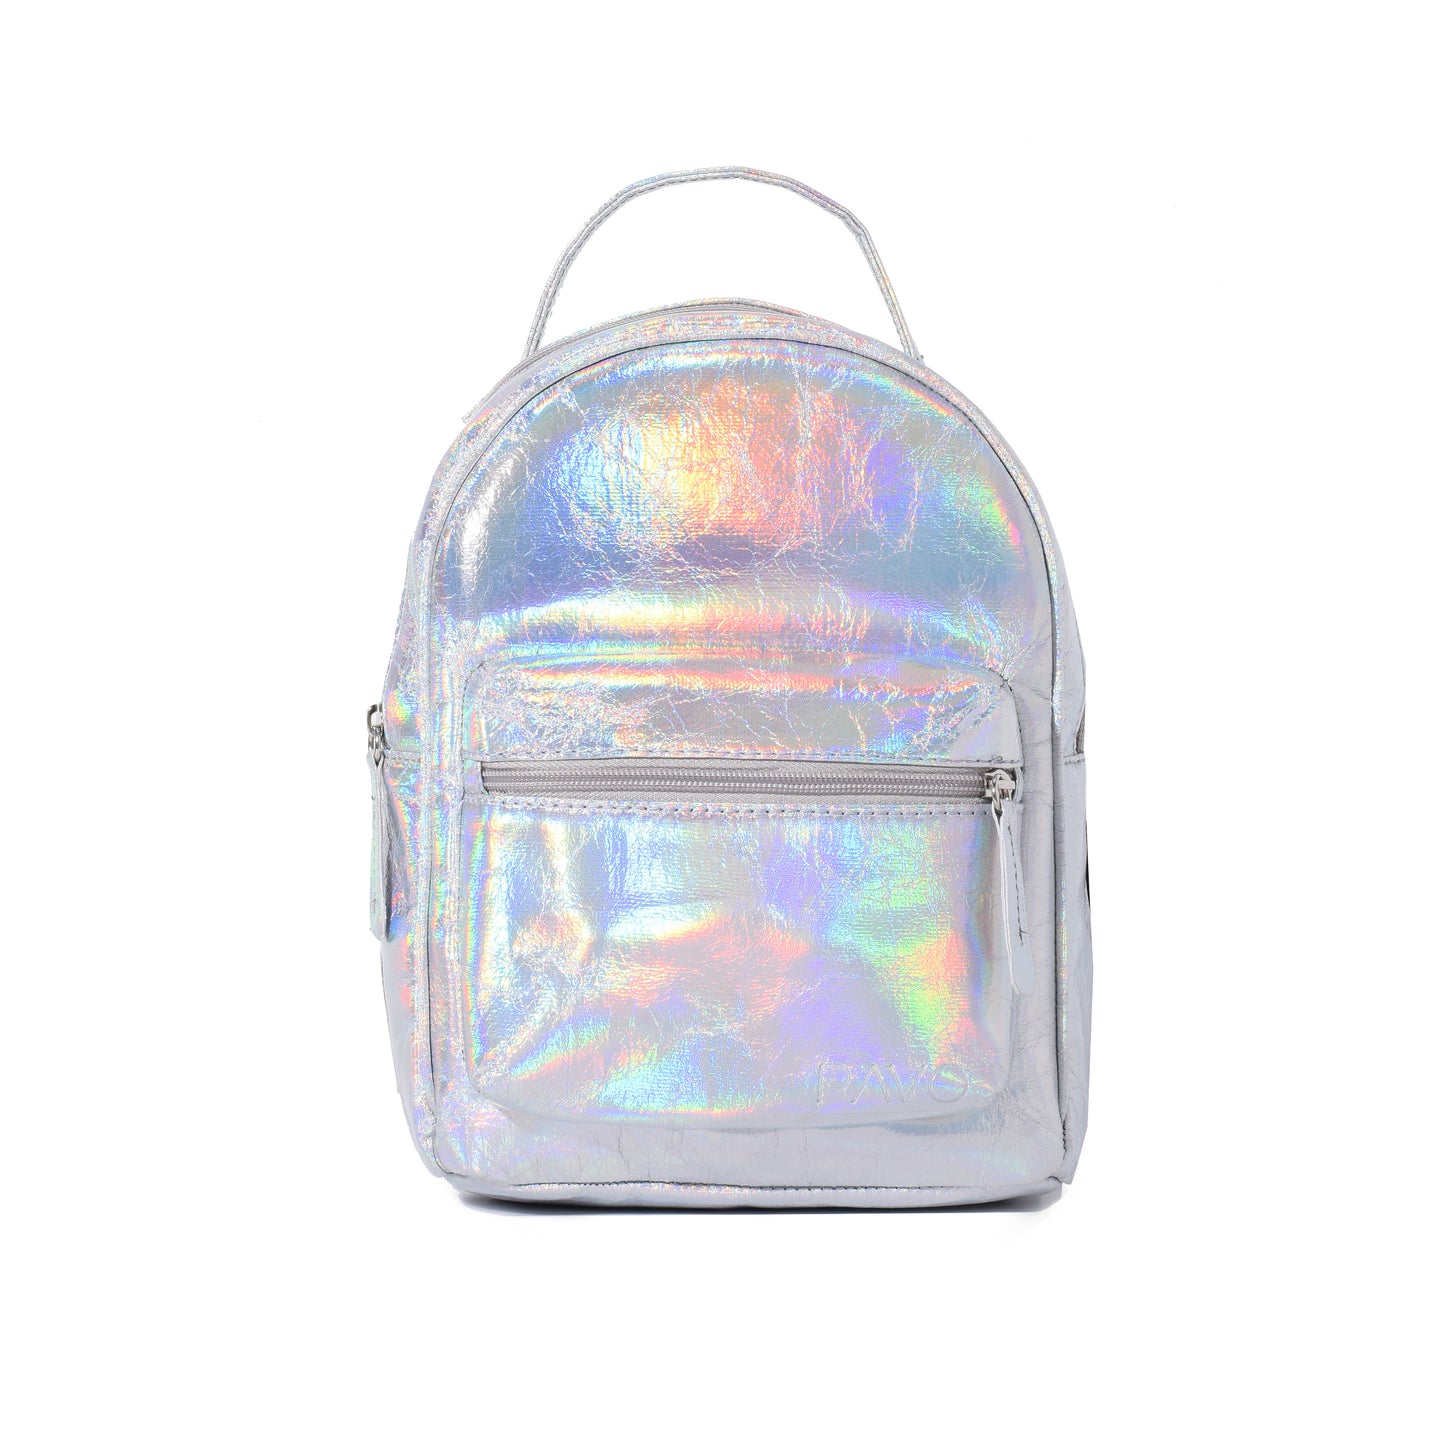 Silver unicorn Kids Backpack - Code 411